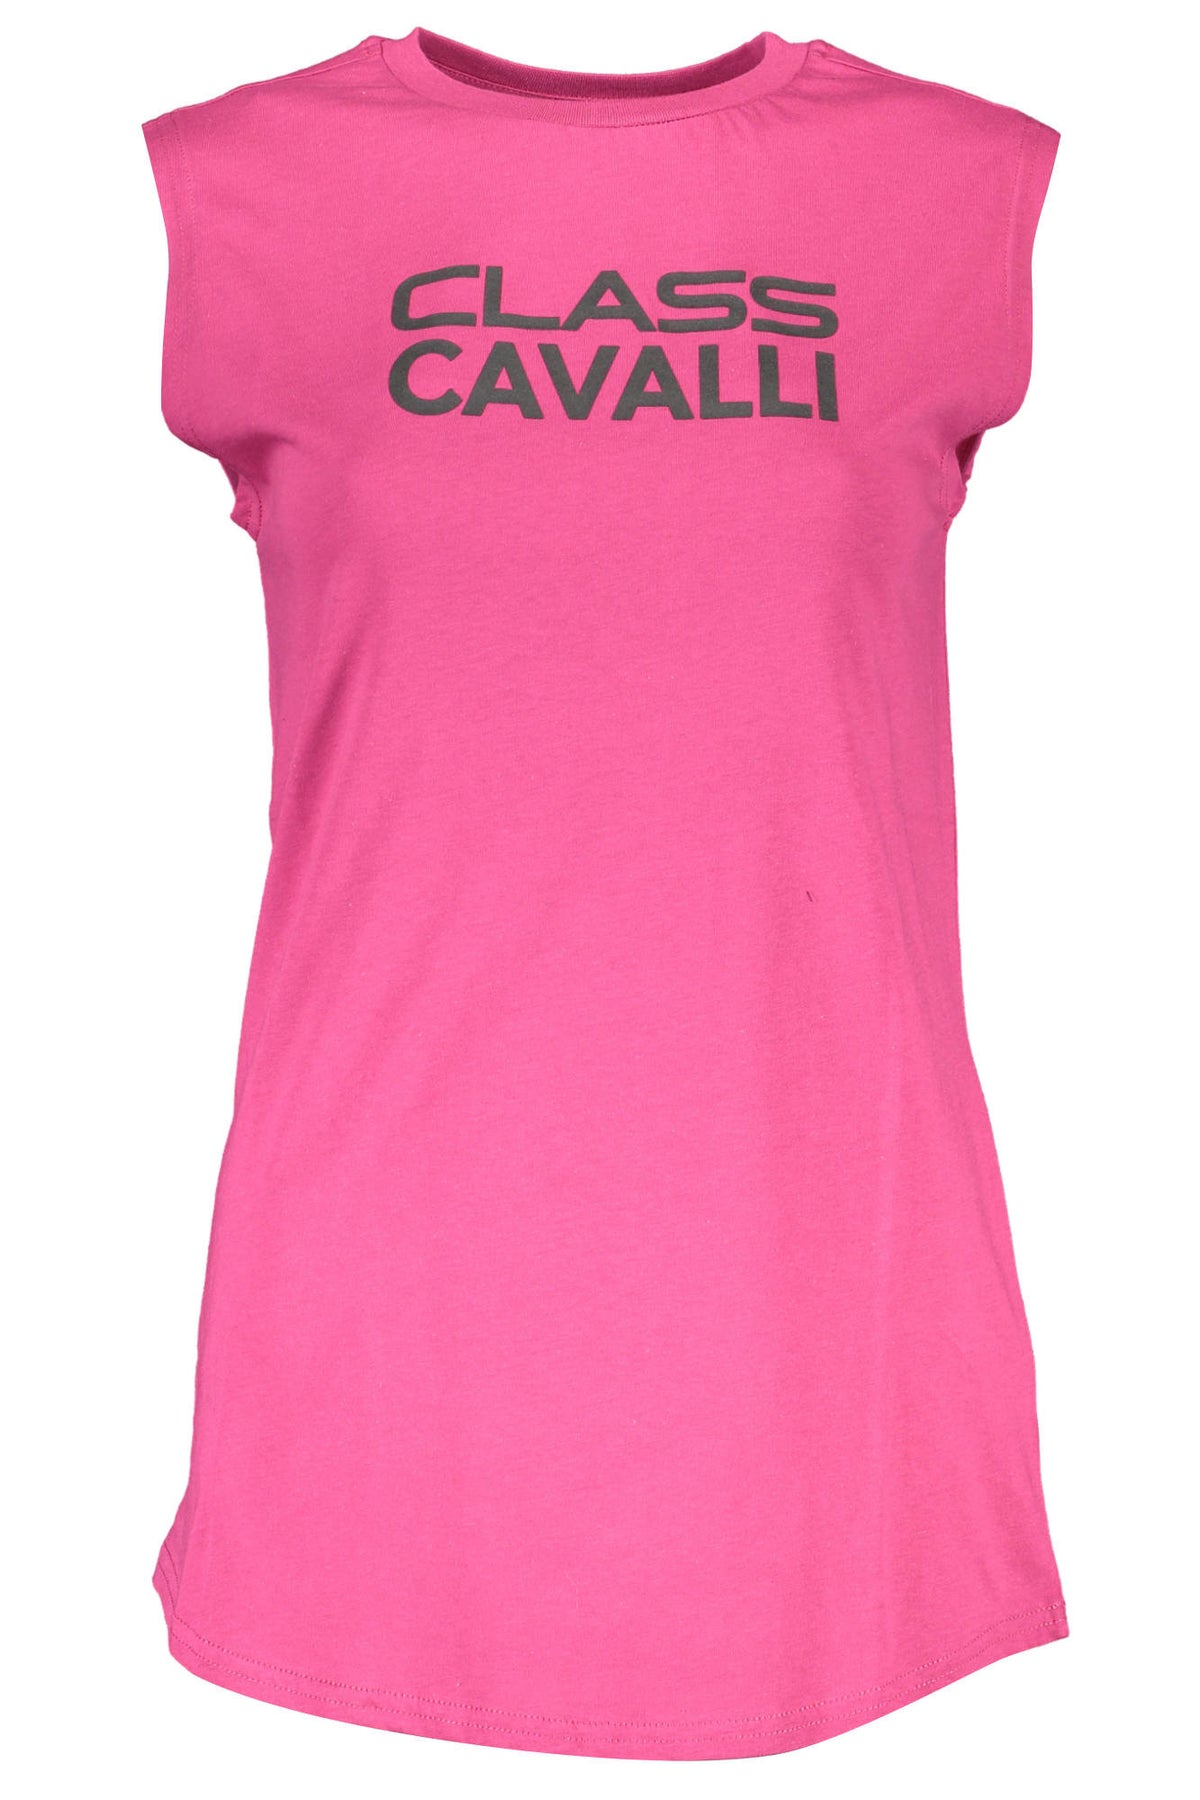 CAVALLI CLASS Damen Top T-Shirts Shirt Oberteil mit Rundhalsausschnitt, ärmellos